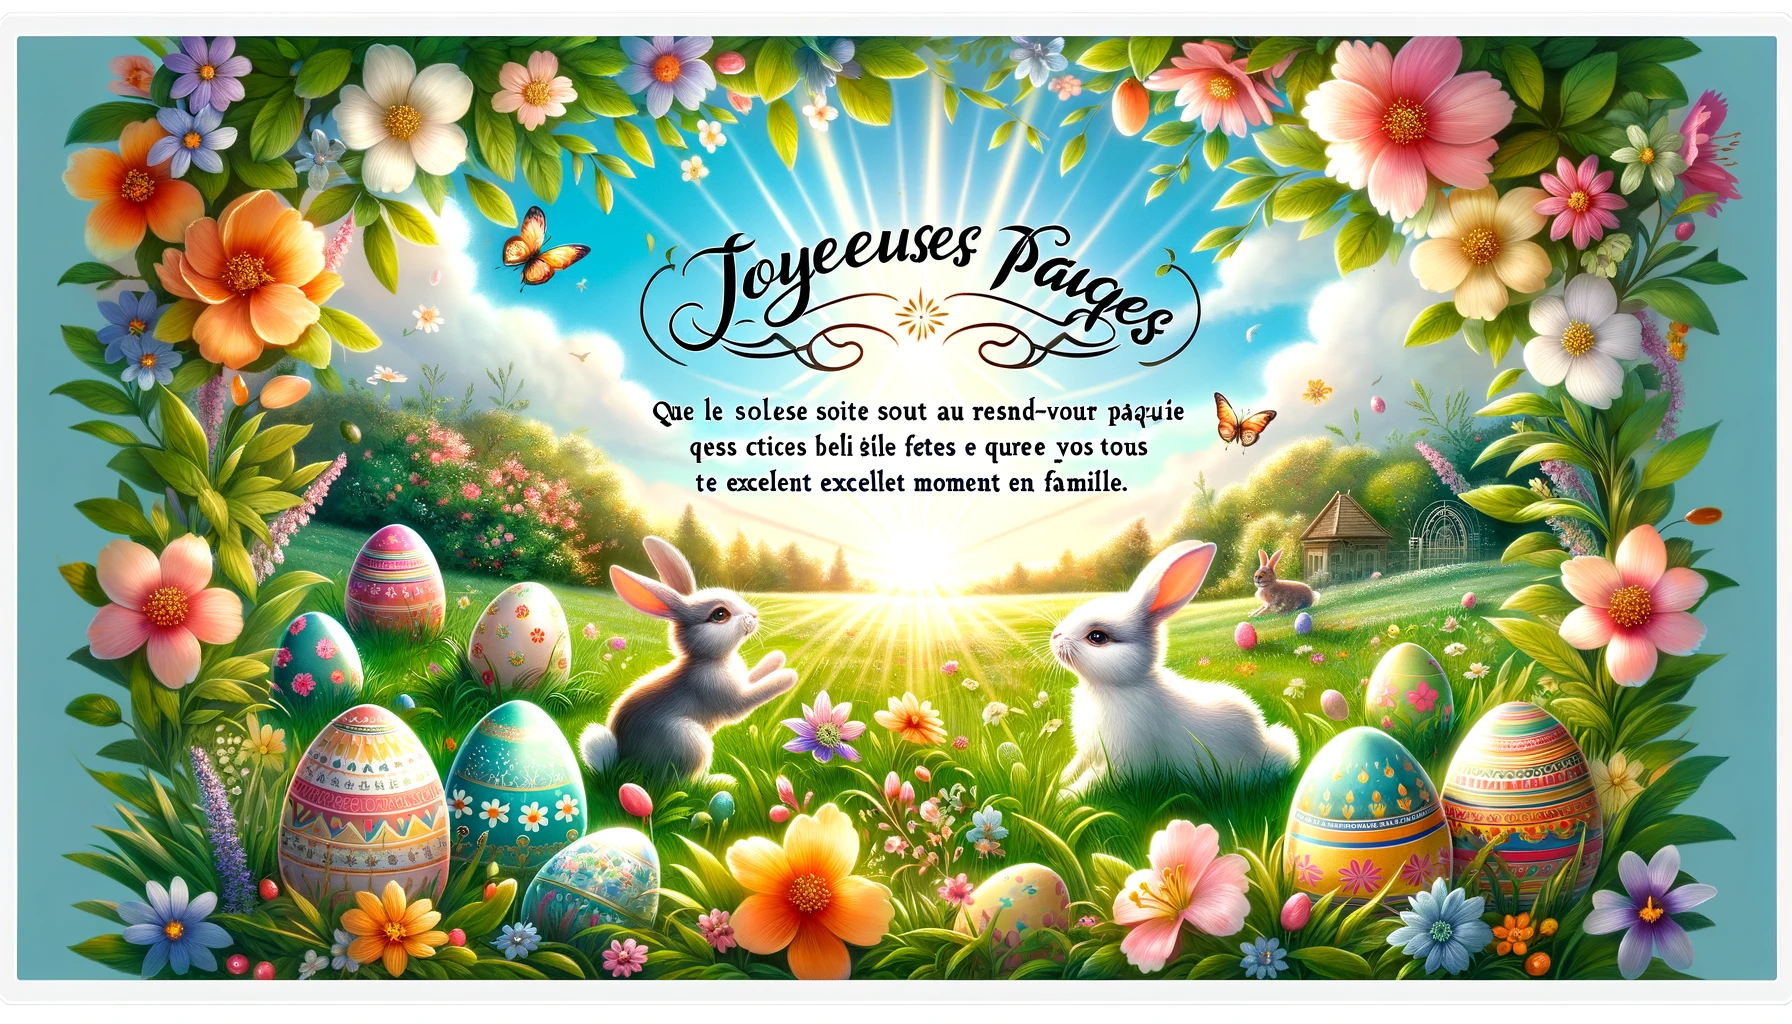 "Je vous souhaite de passer d'excellentes fêtes de Pâques, entourés de vos proches et sous un beau soleil printanier."